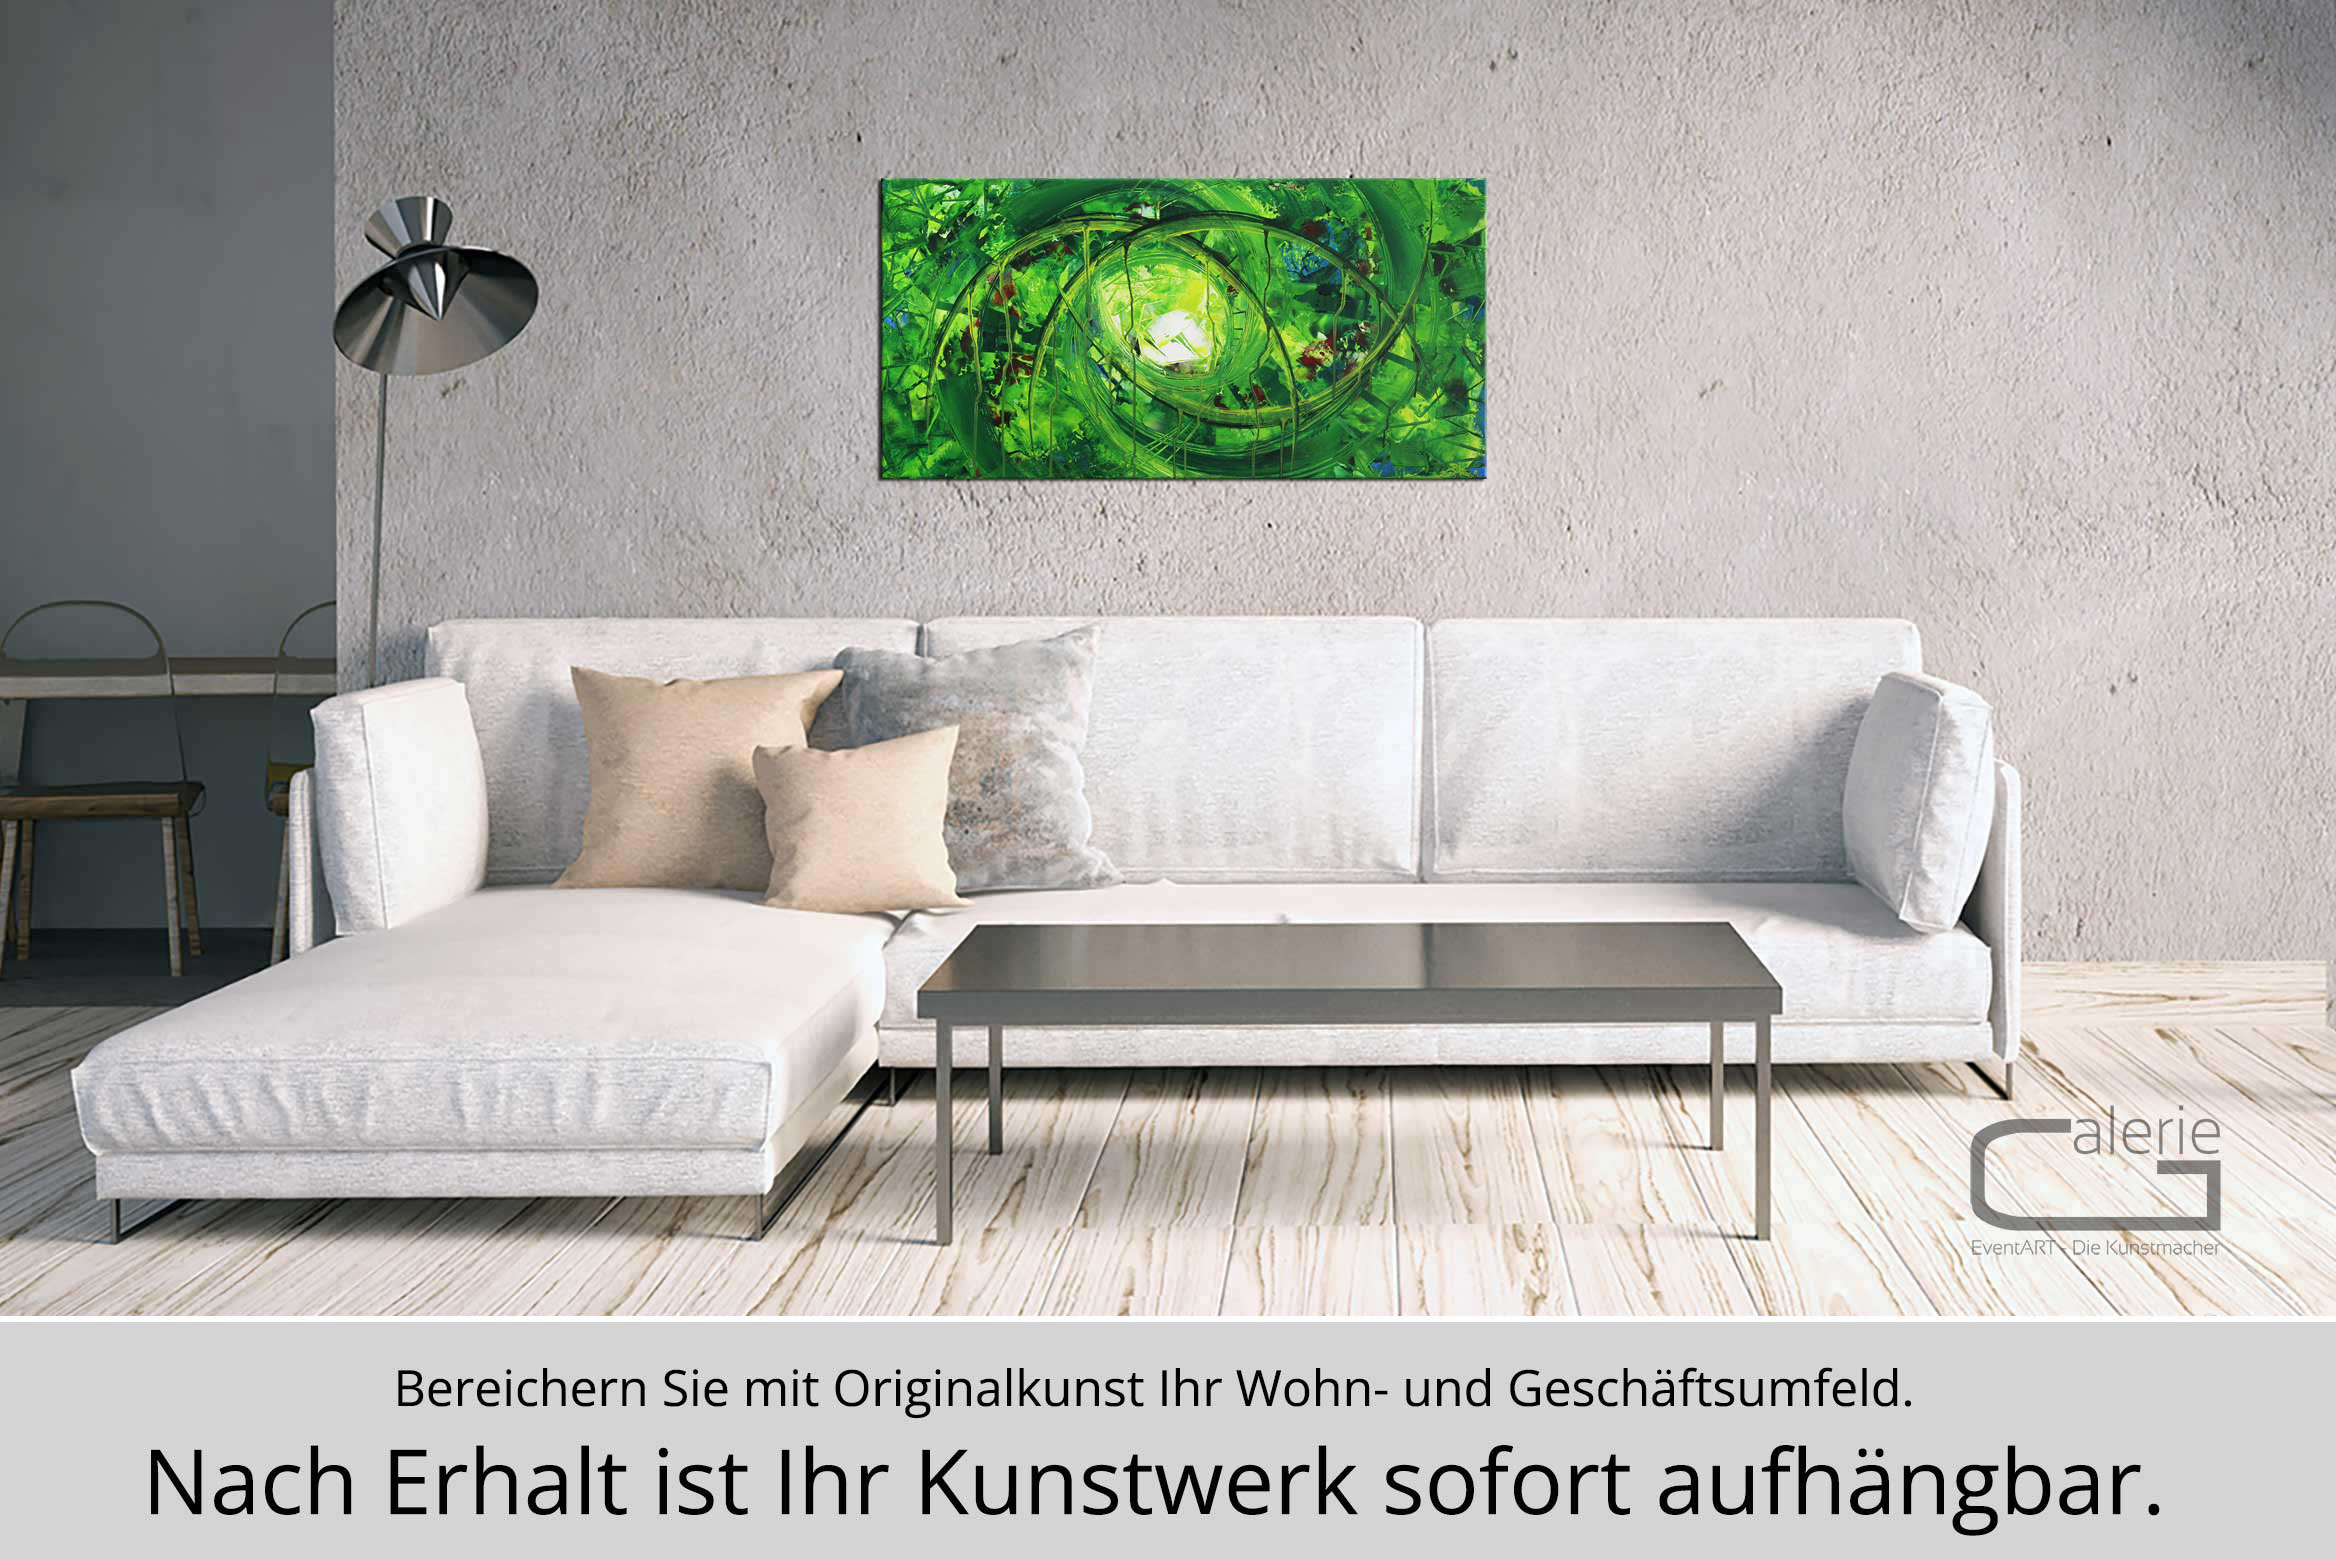 Abstraktes Originalgemälde: Tor zum Grün VI, R. König, Unikat